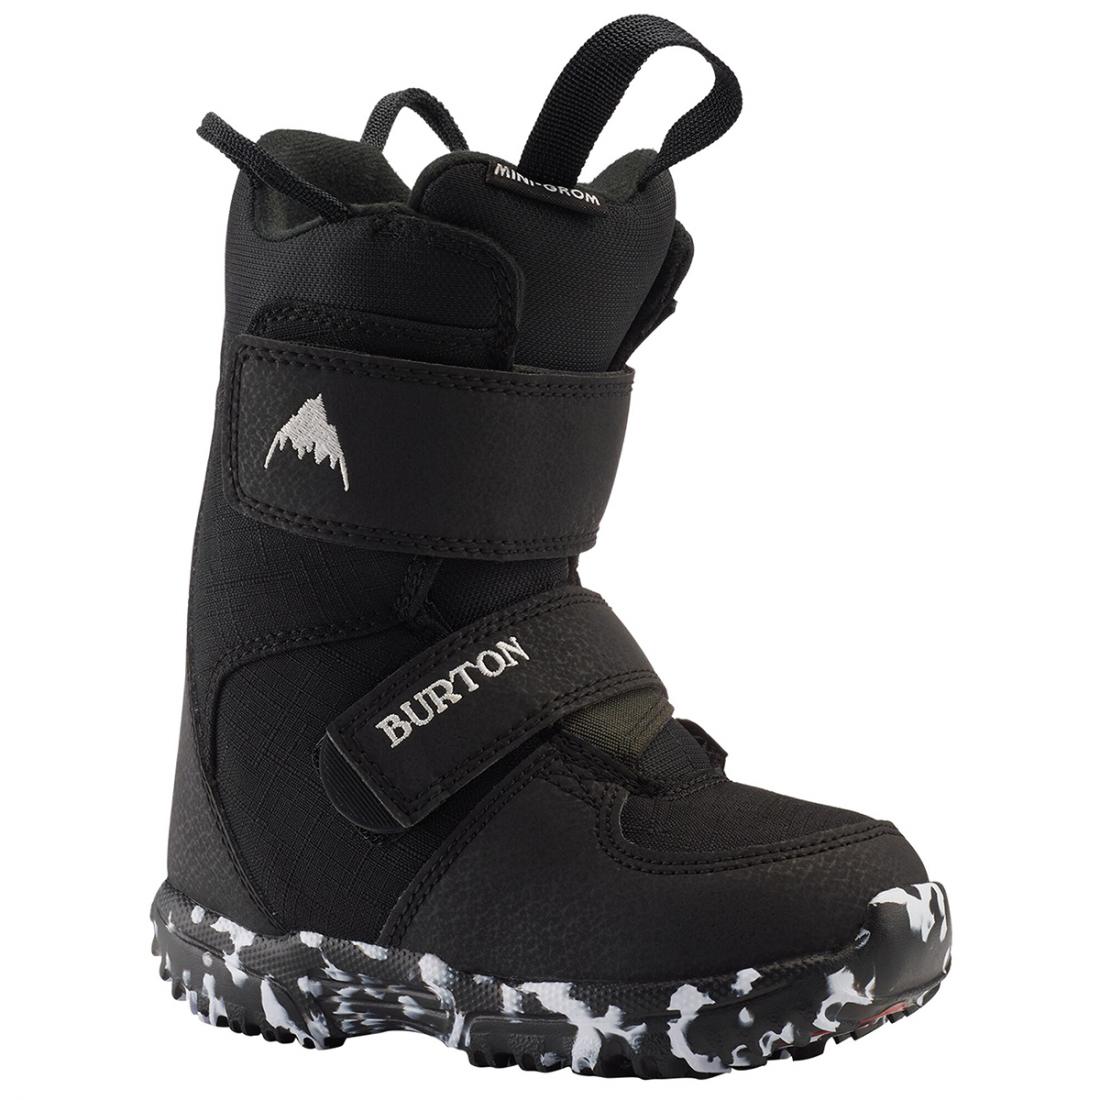 Ботинки сноубордические для детей MINI - GROM Burton, цвет черный, размер 11